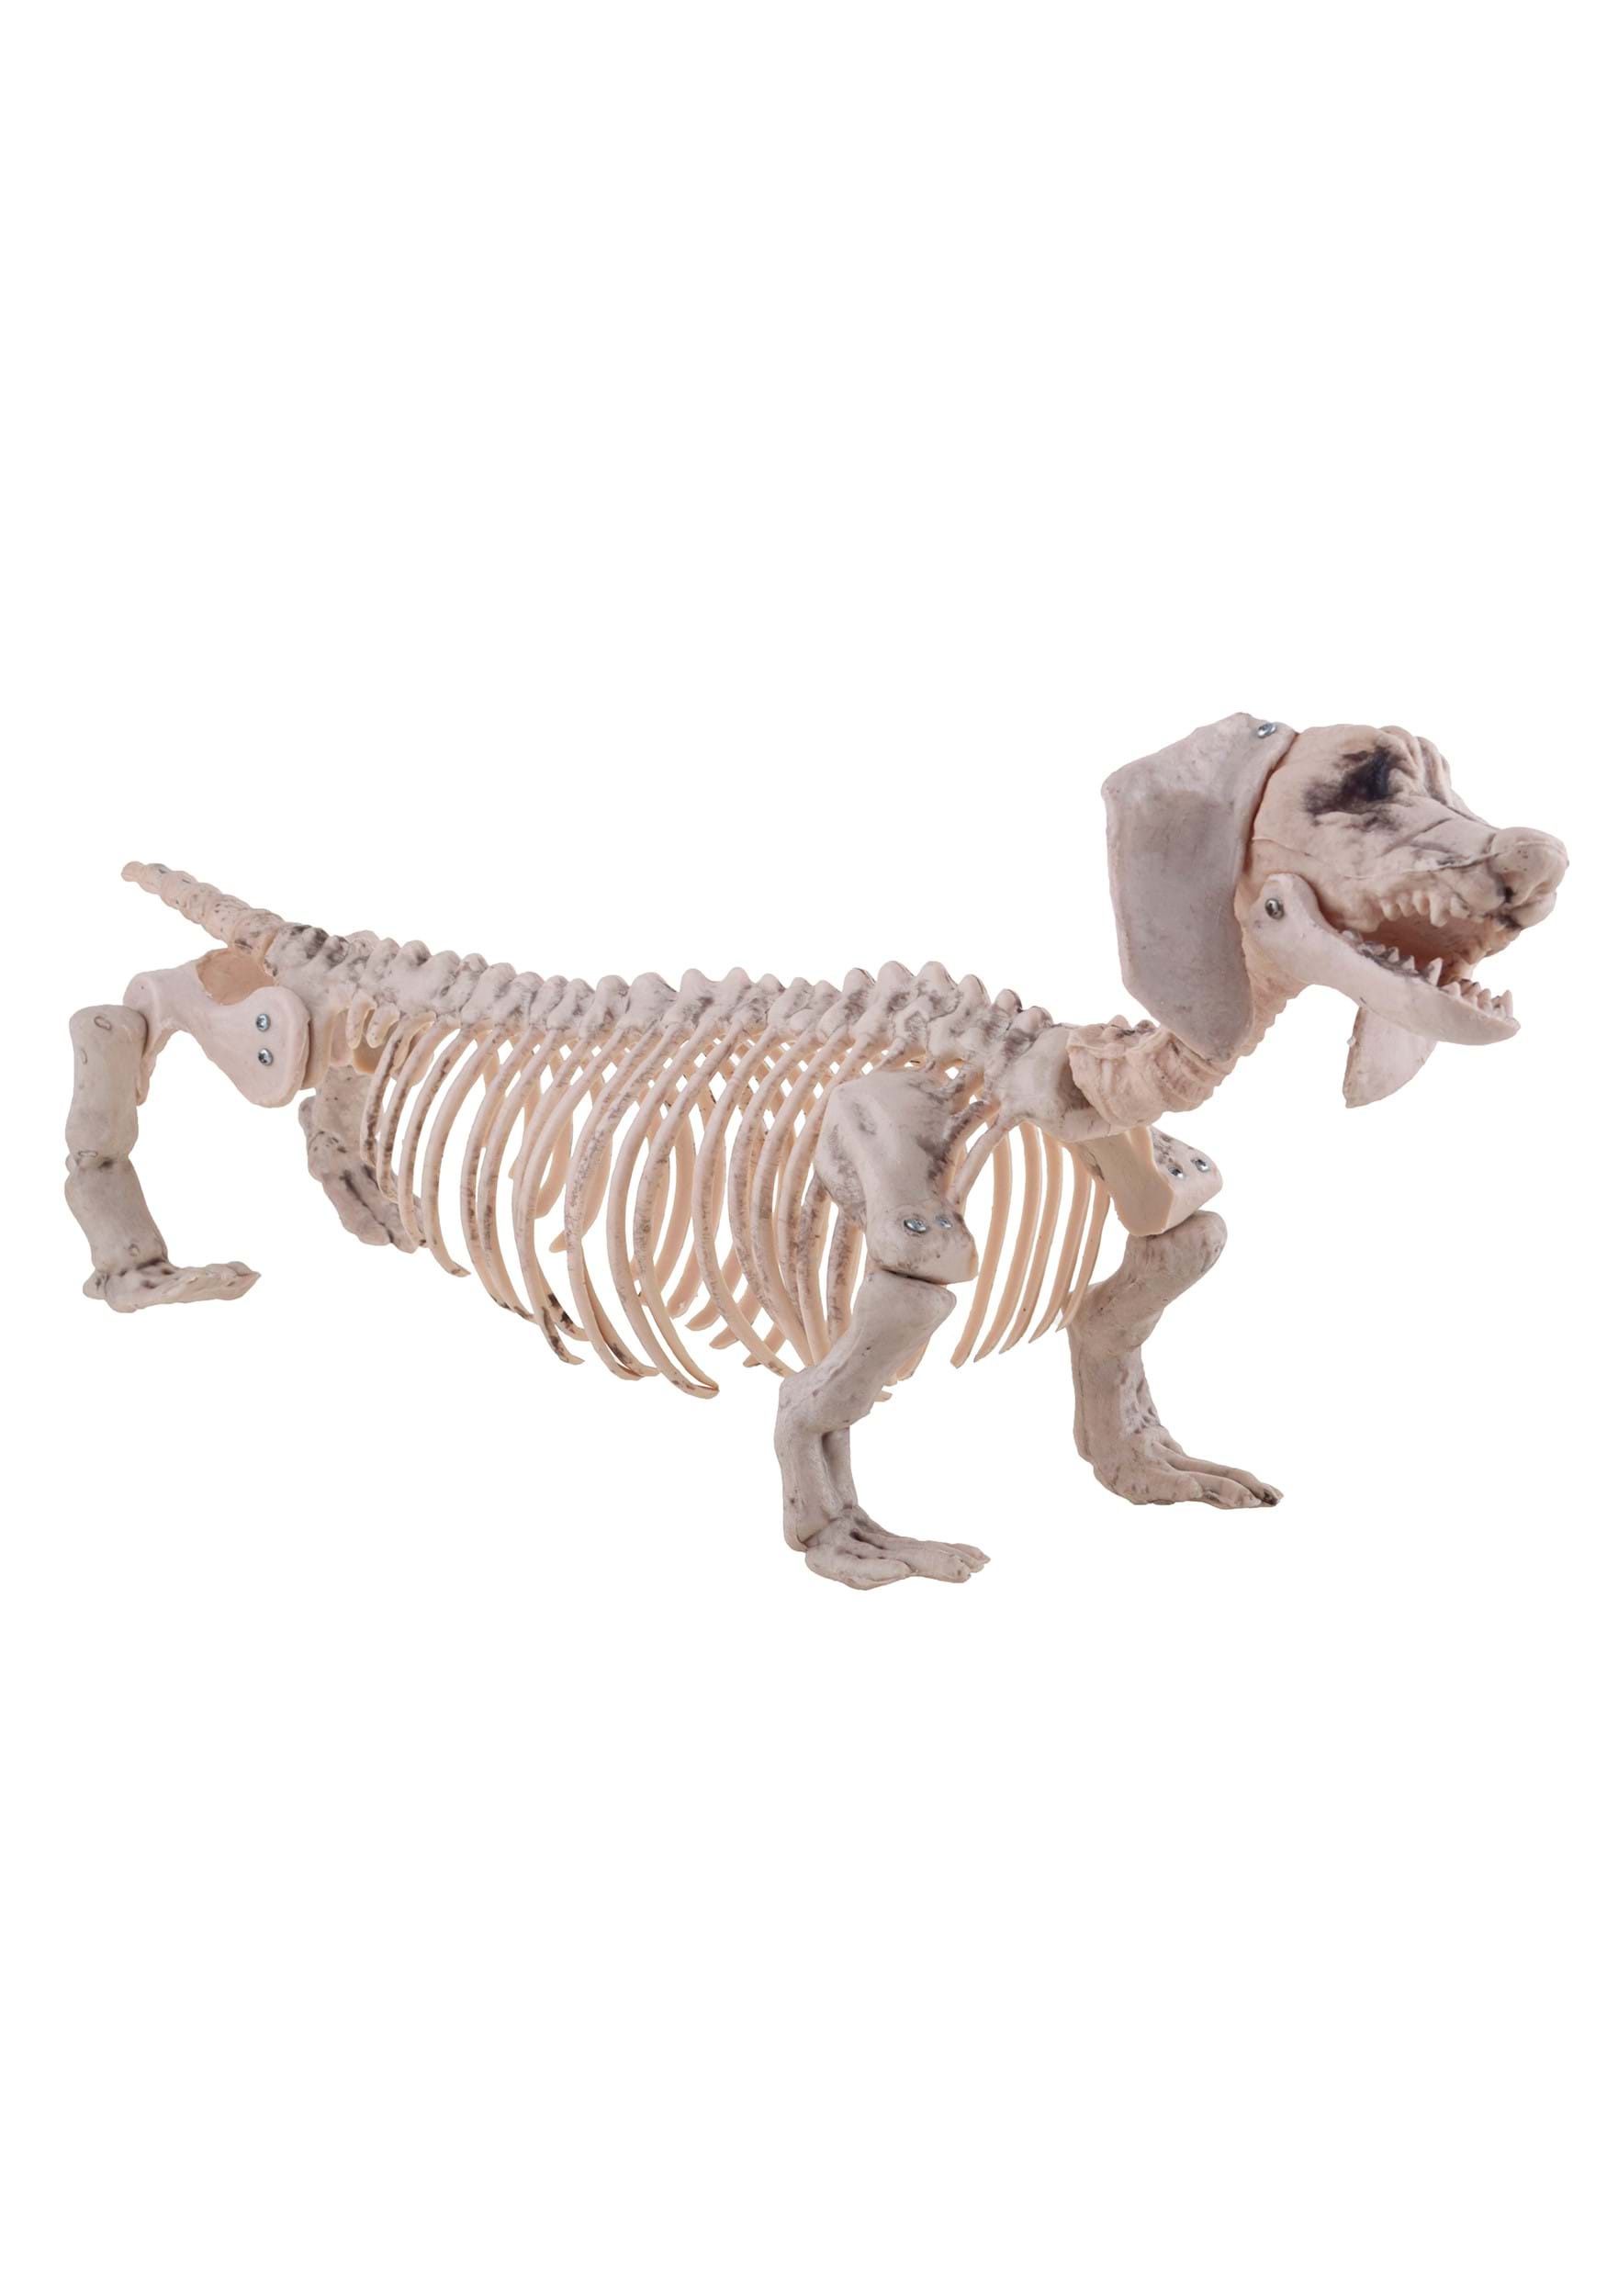 Weiner Dog Skeleton